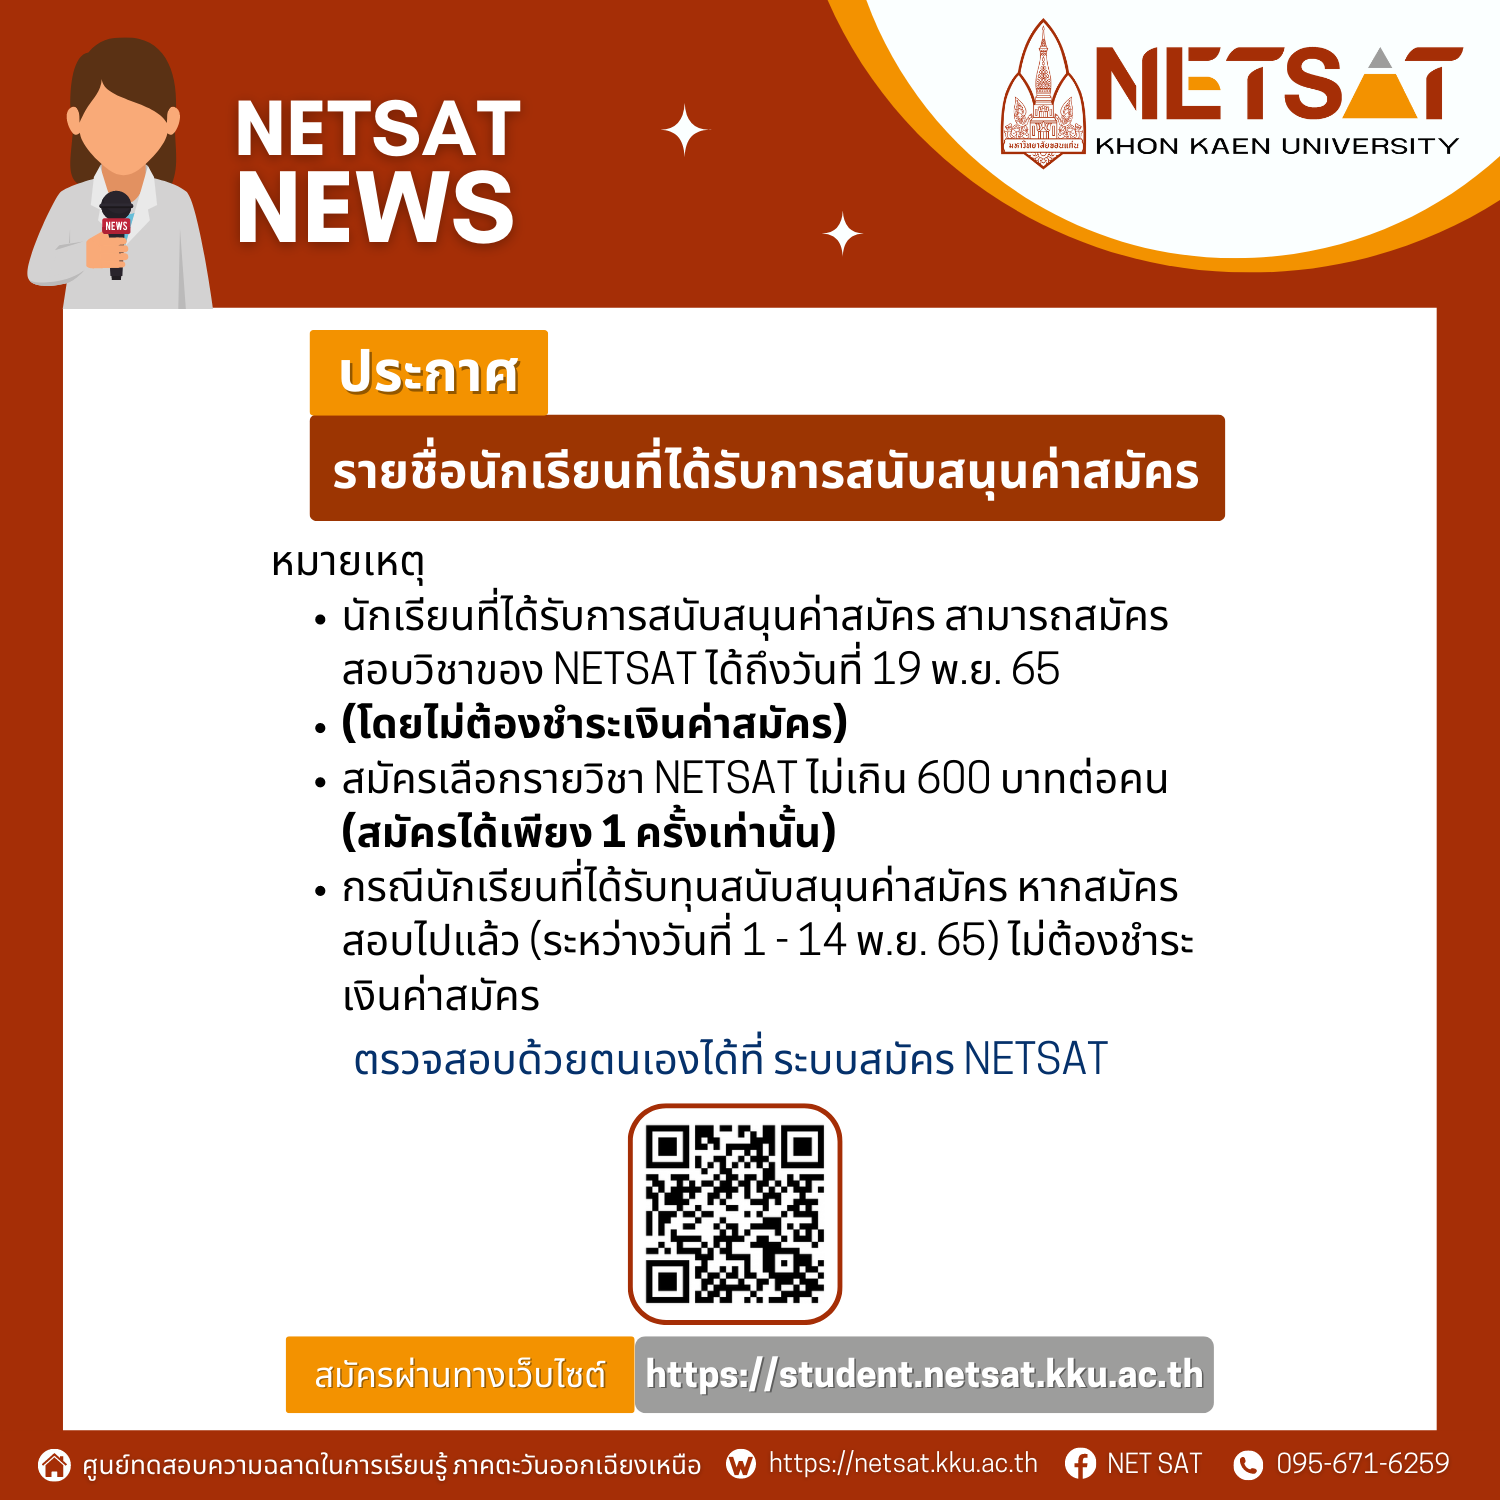 ประกาศรายชื่อนักเรียนที่ได้รับการสนับสนุนค่าสมัคร NETSAT ครั้งที่ 1/2566